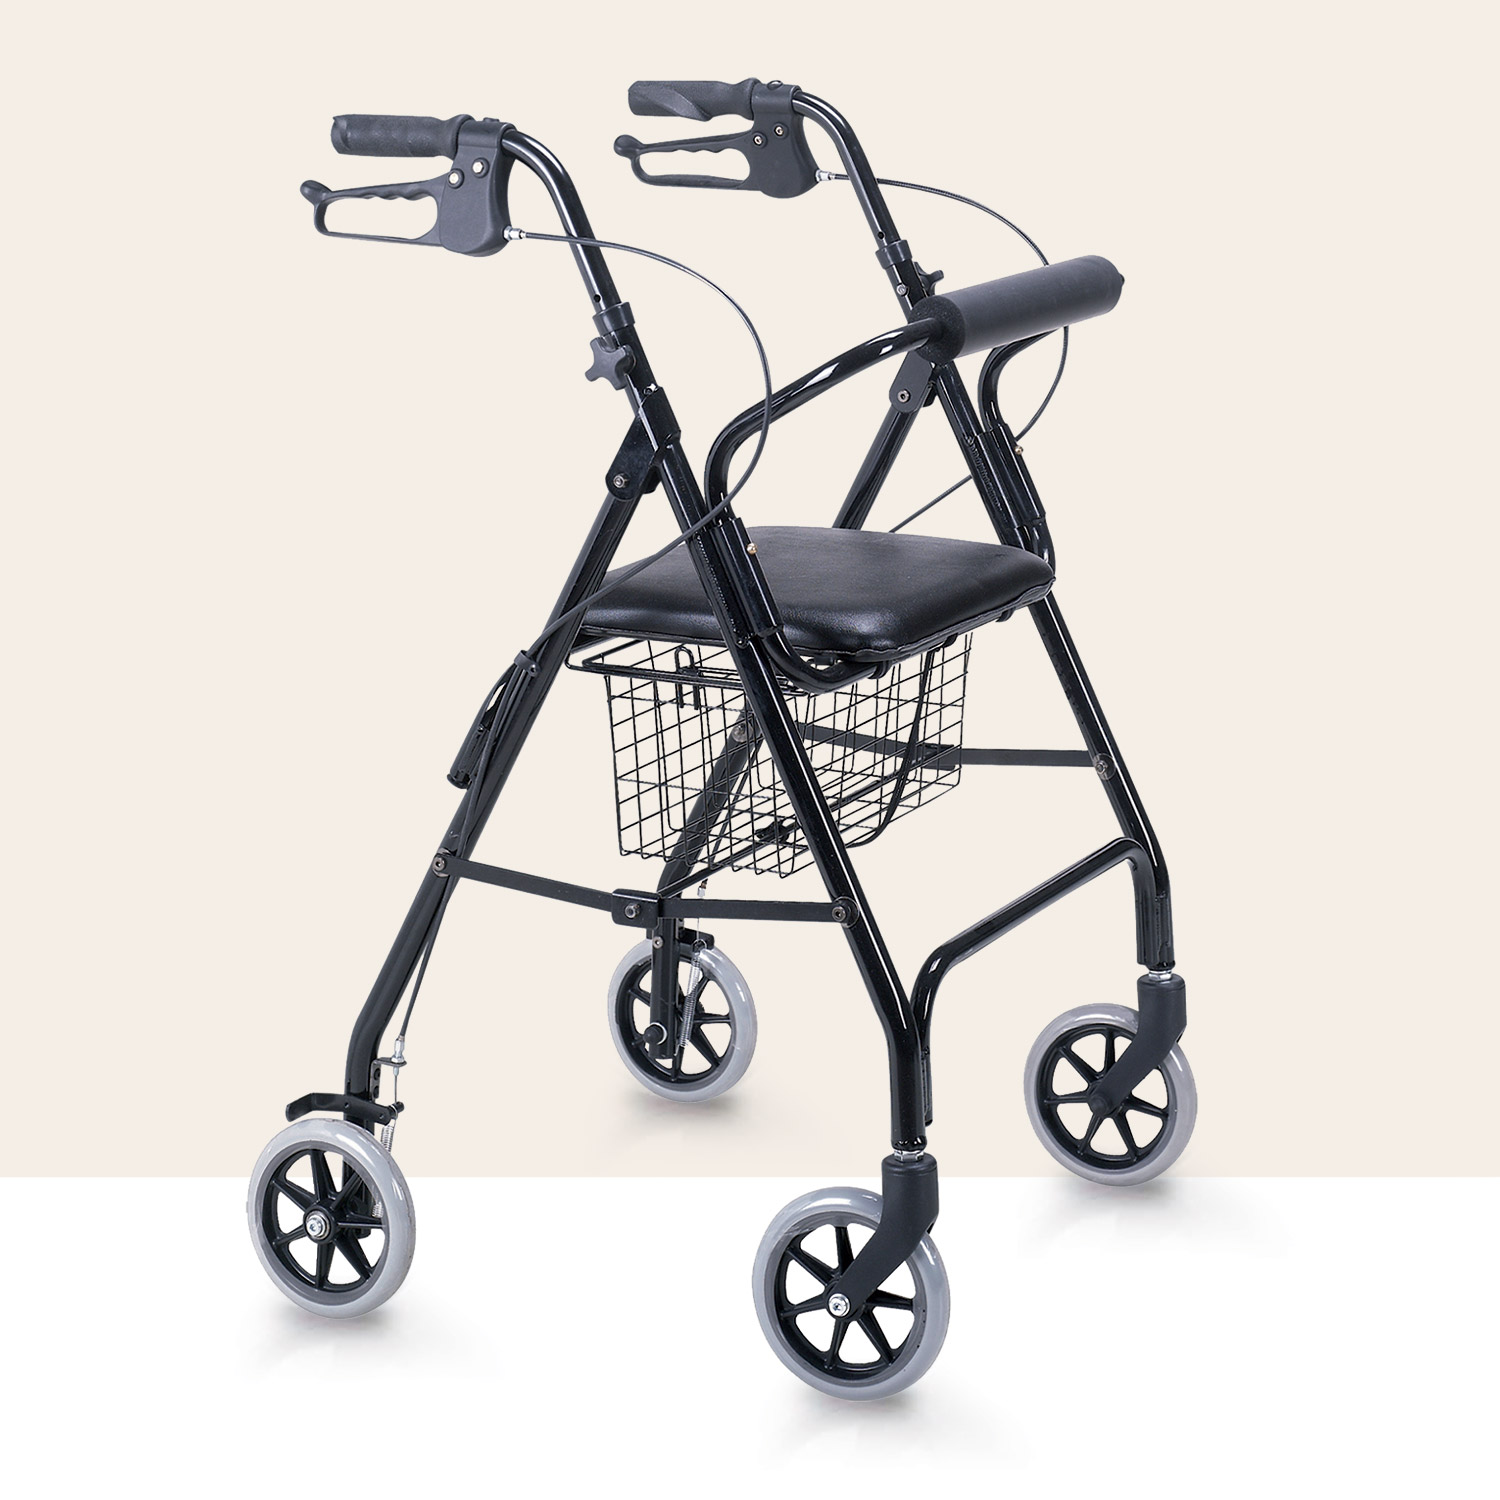 Prodotti e ausili per disabili e anziani deambulatori carrozzine Verona